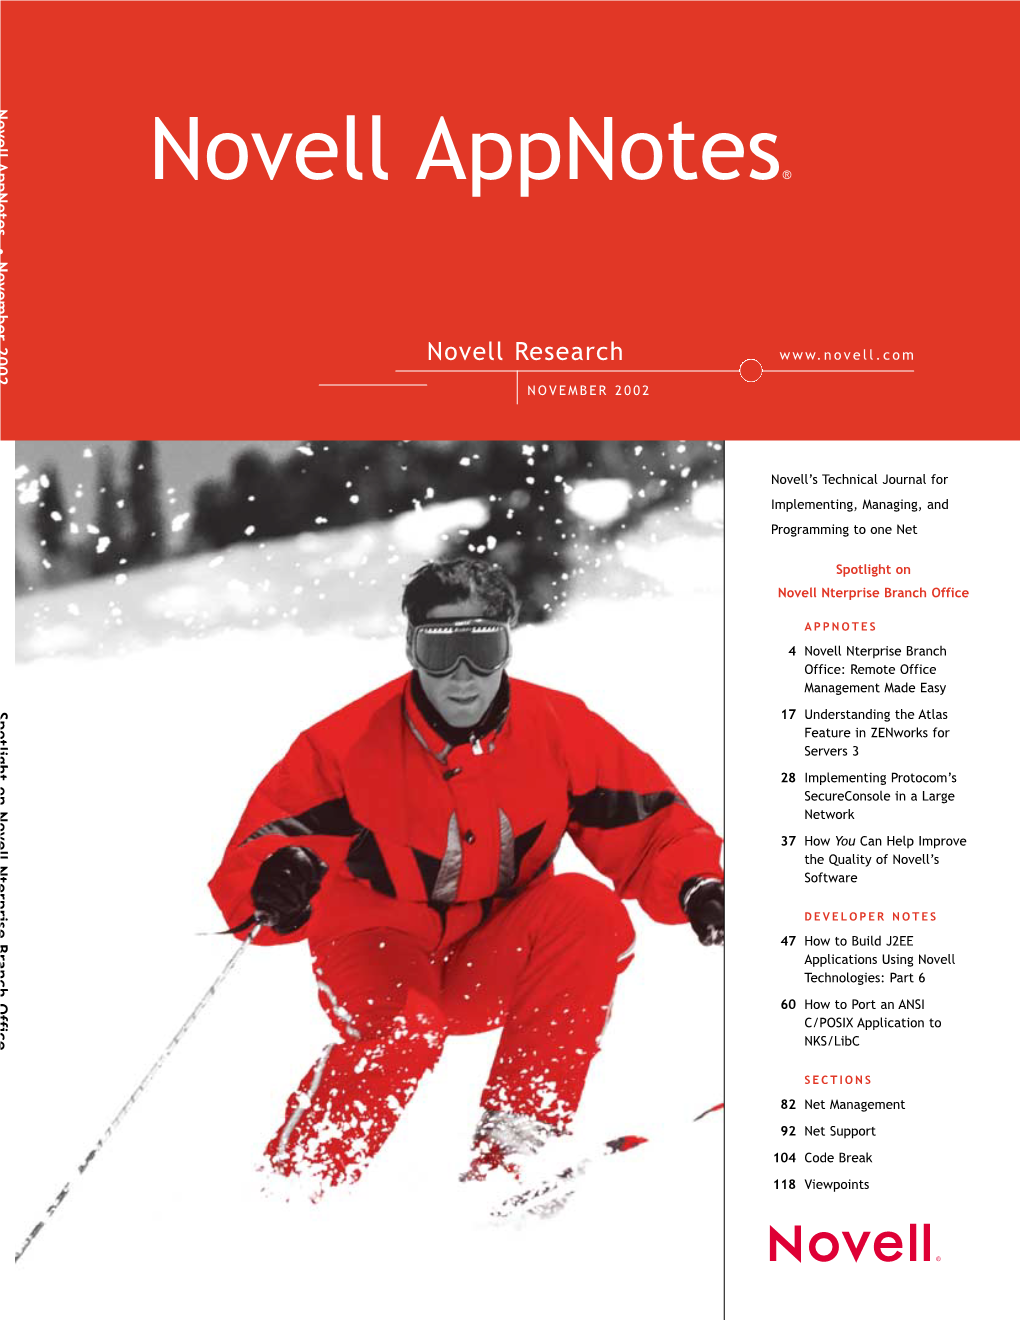 Novell Appnotes November 2002